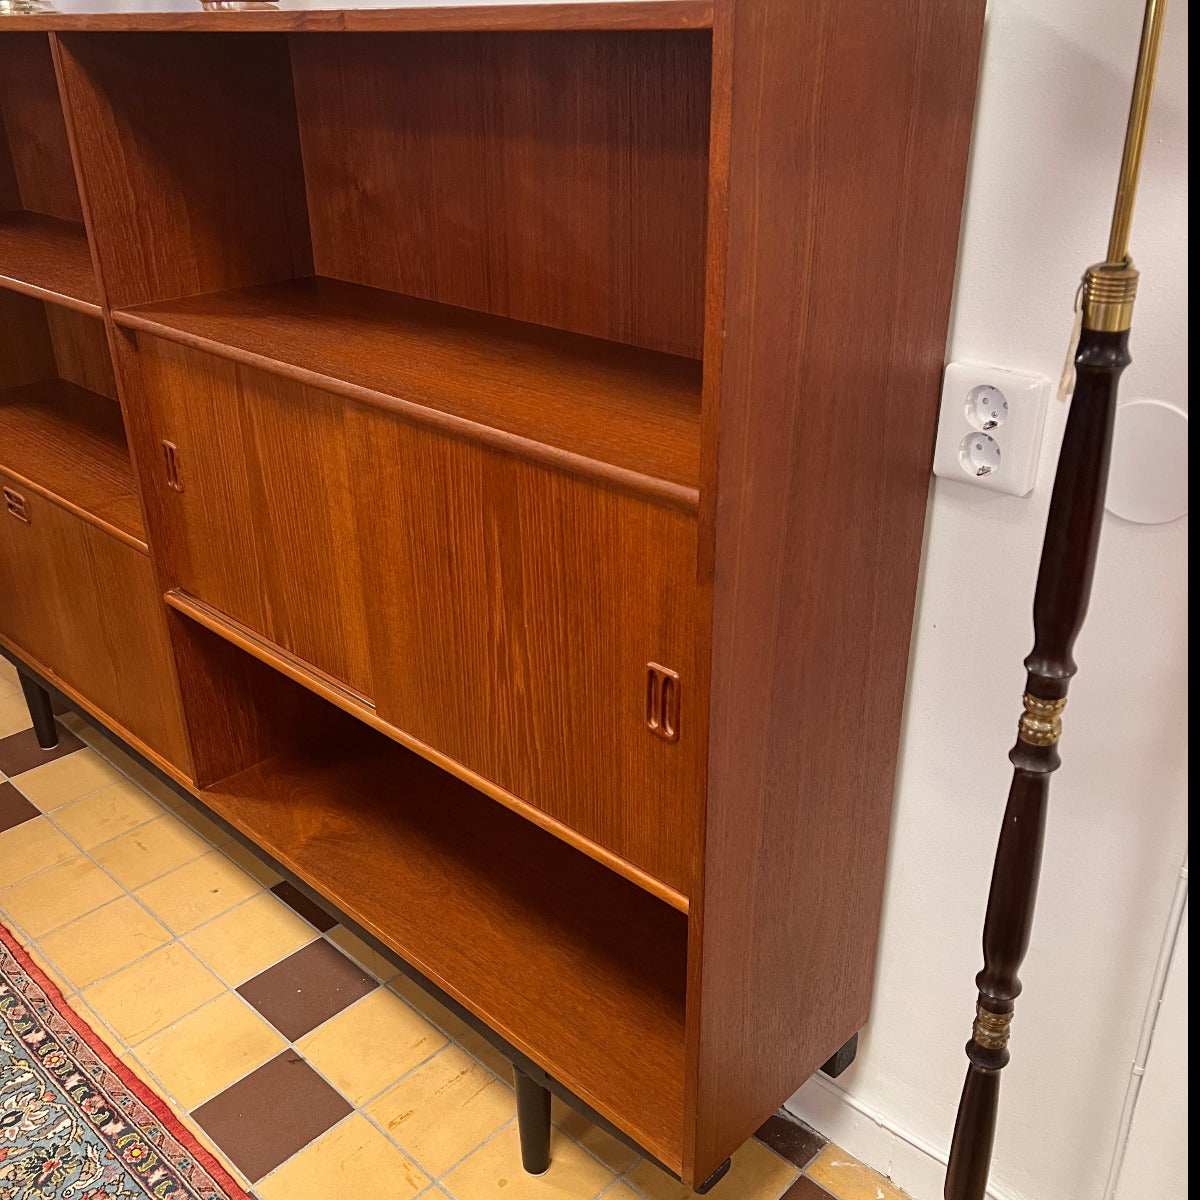 Denna underbara danska möbel har många bokhyllor, barskåp eller hemligt fack med små hyllor i ena kanten och skjutluckor med ett hyllplan. 